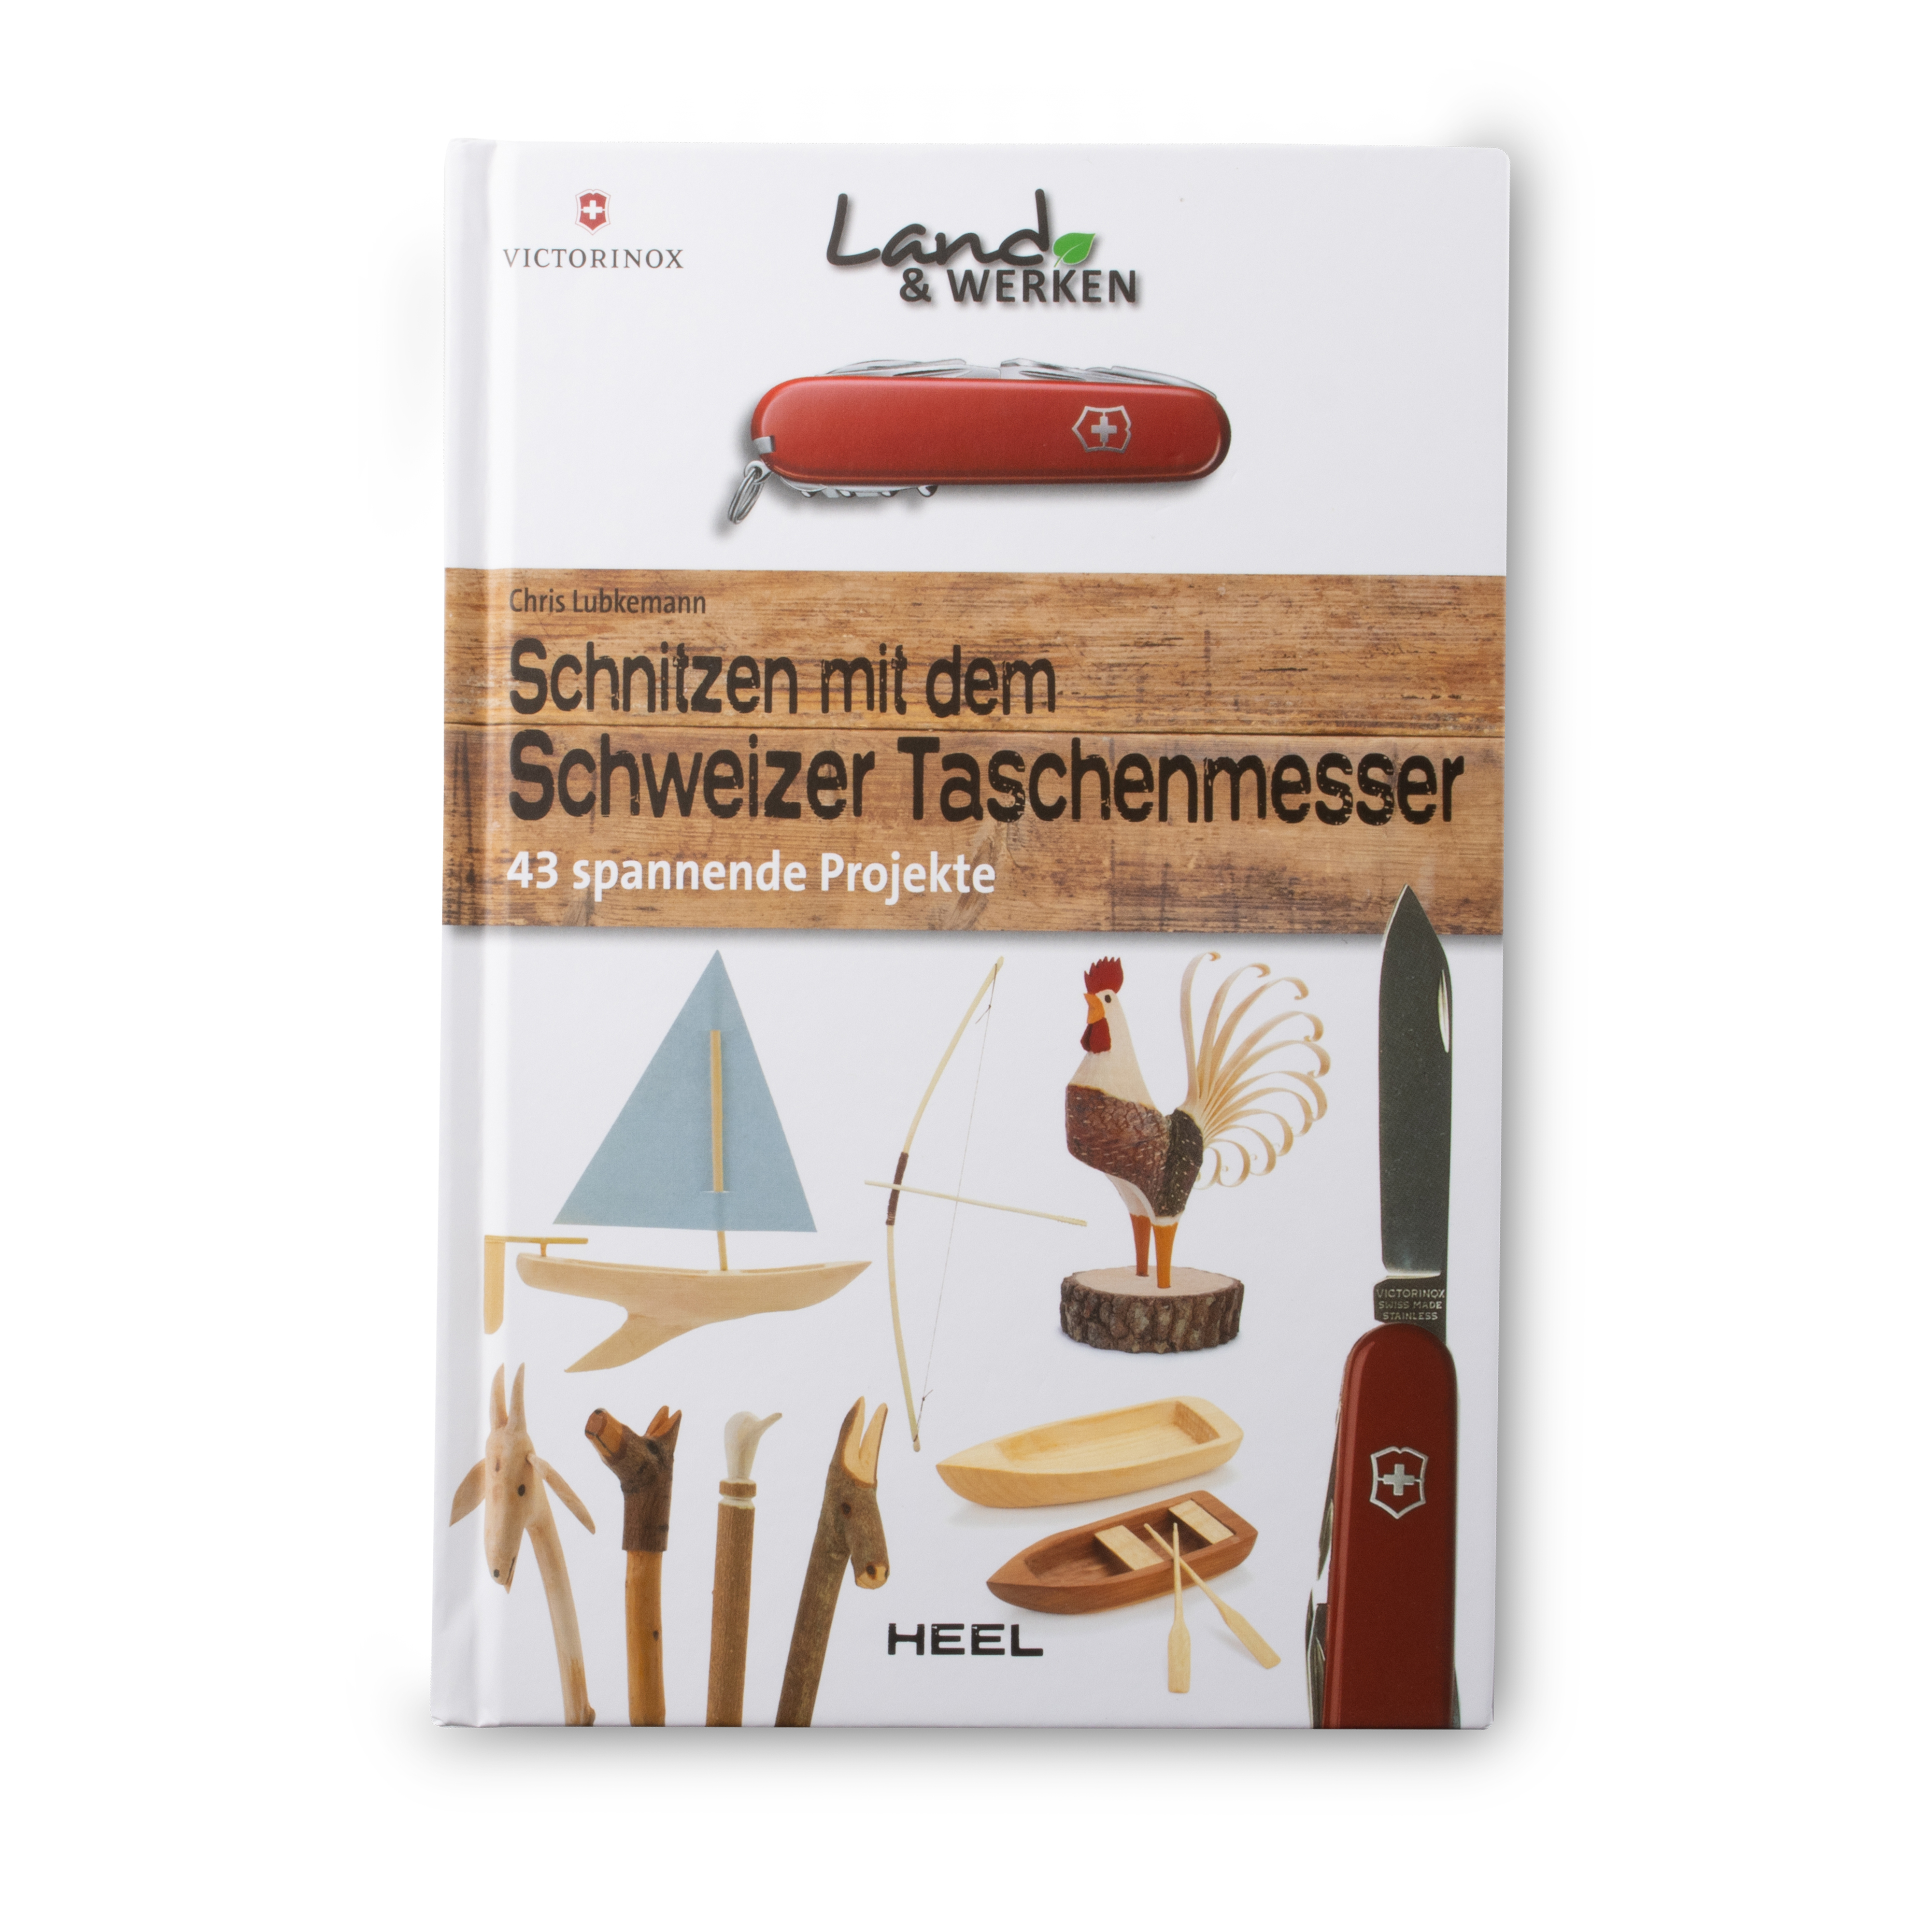 Victorinox Buch "Schnitzen mit dem Schweizer Taschenmesser"